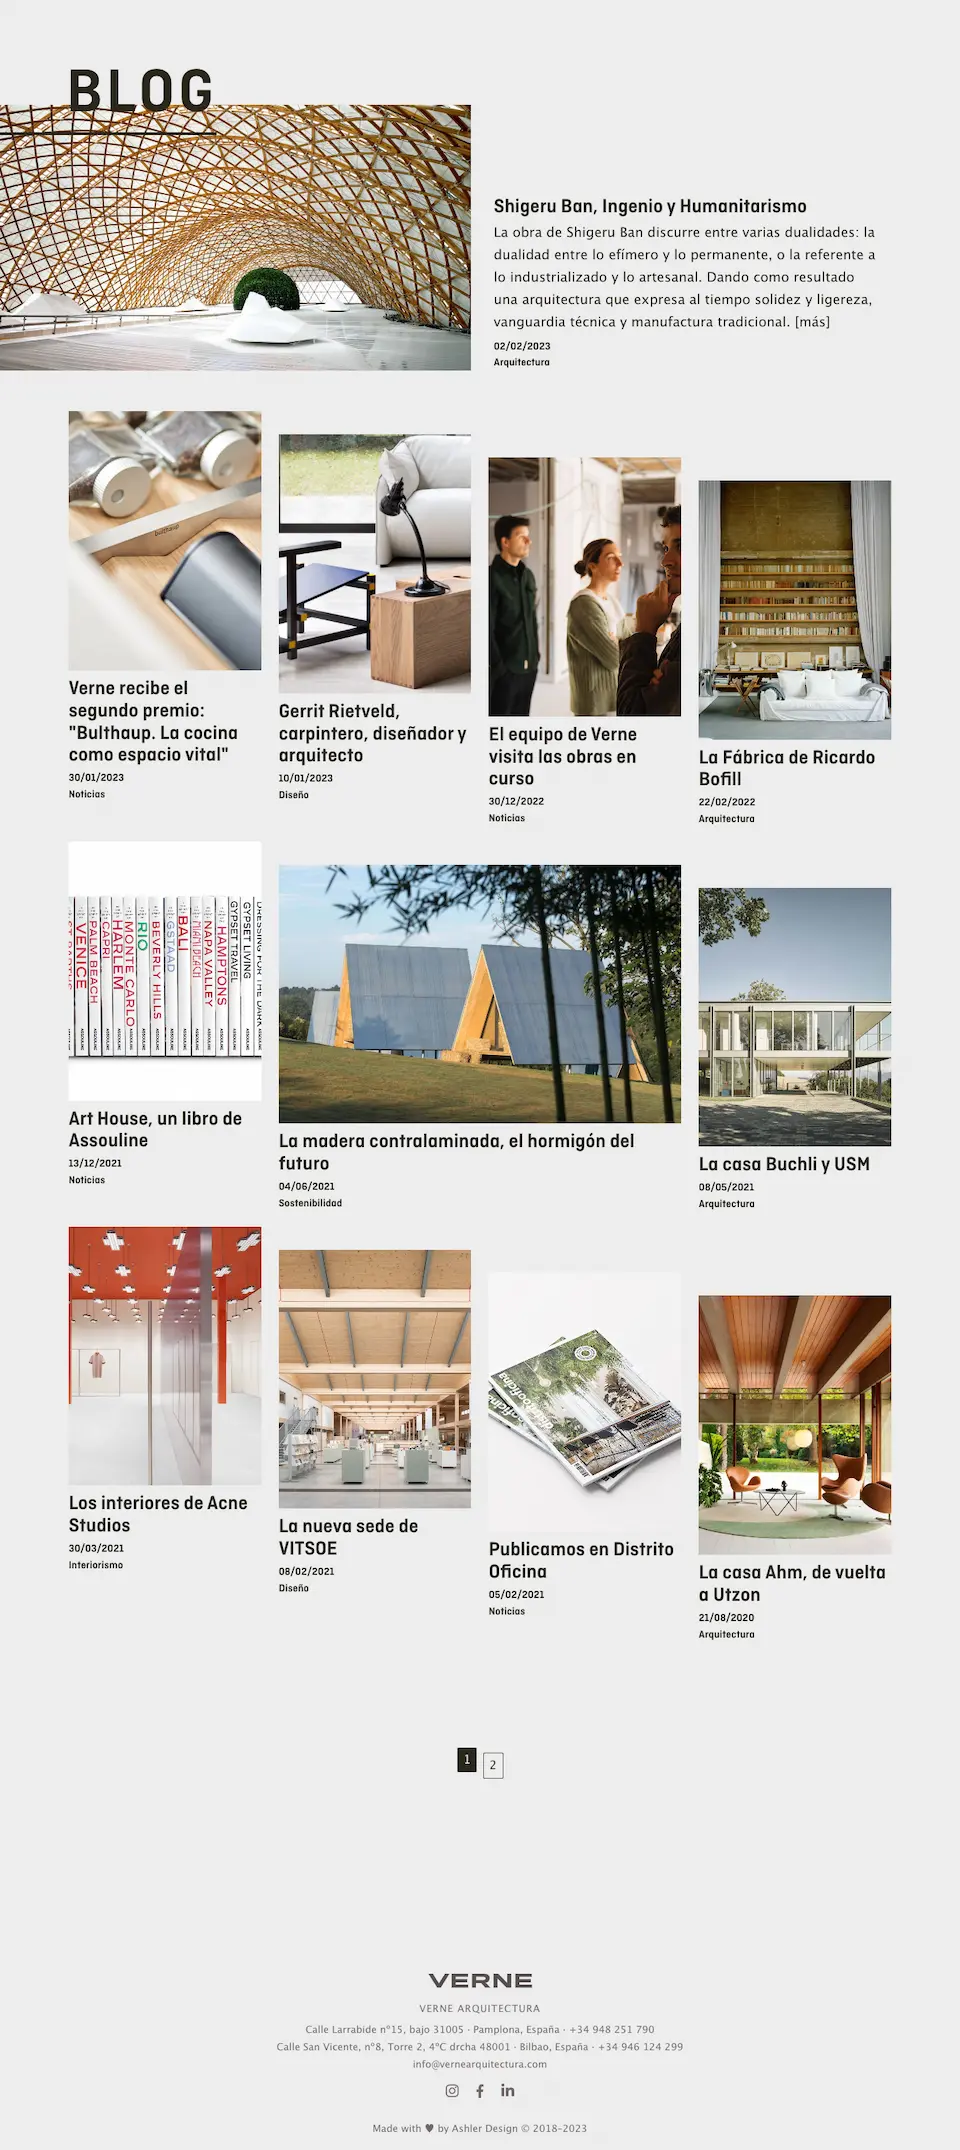 Diseño de blog en la web de Verne Arquitectura